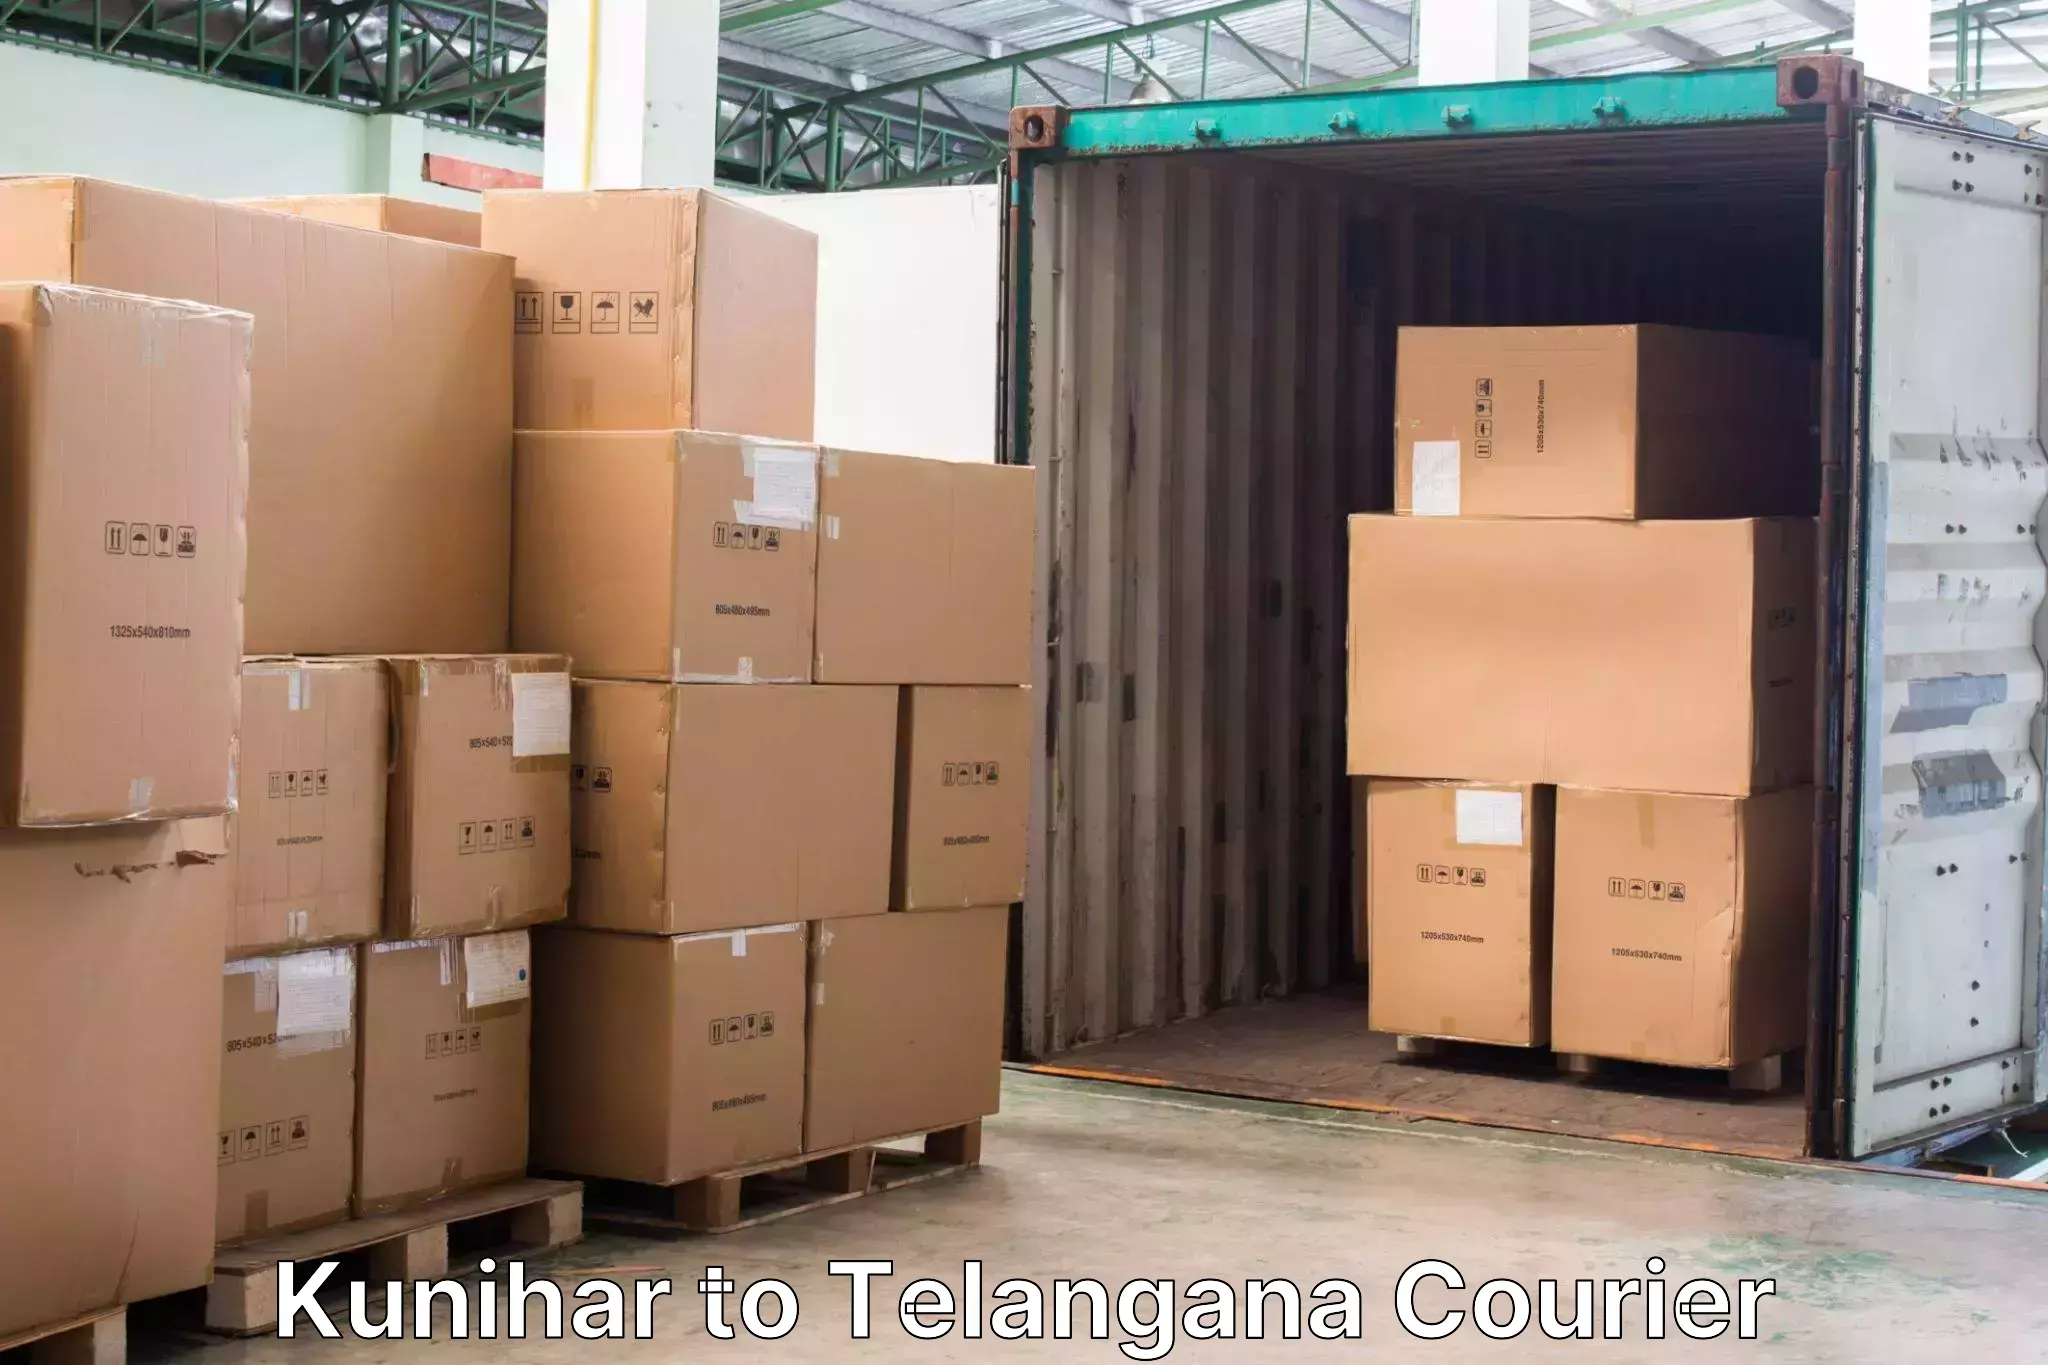 Luggage shipment tracking Kunihar to Eligedu